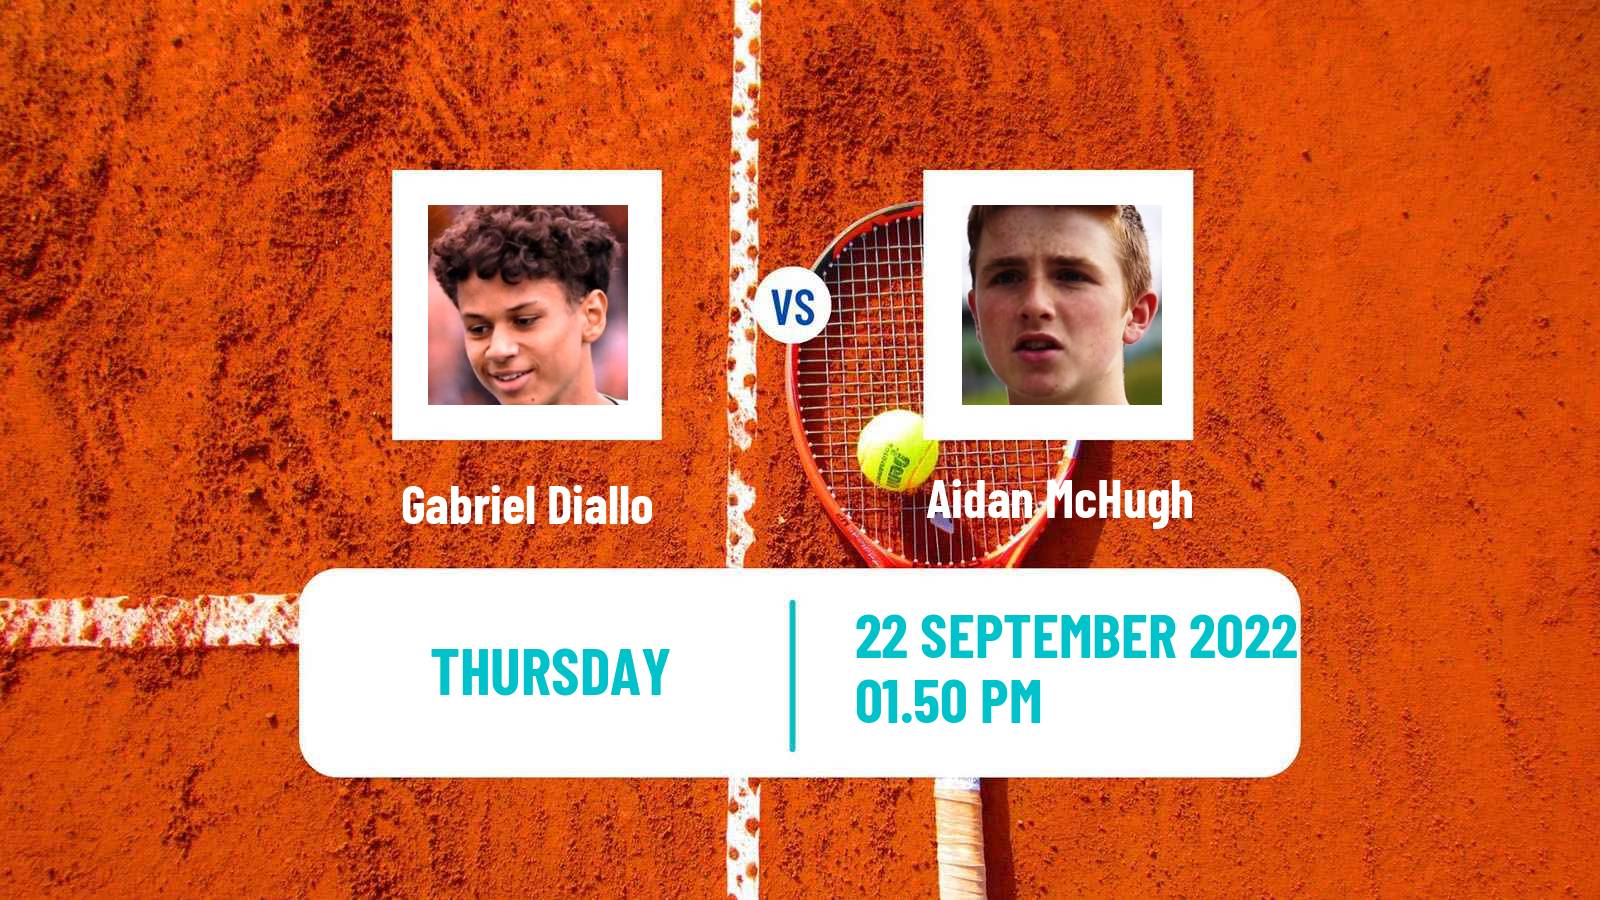 Tennis ATP Challenger Gabriel Diallo - Aidan McHugh